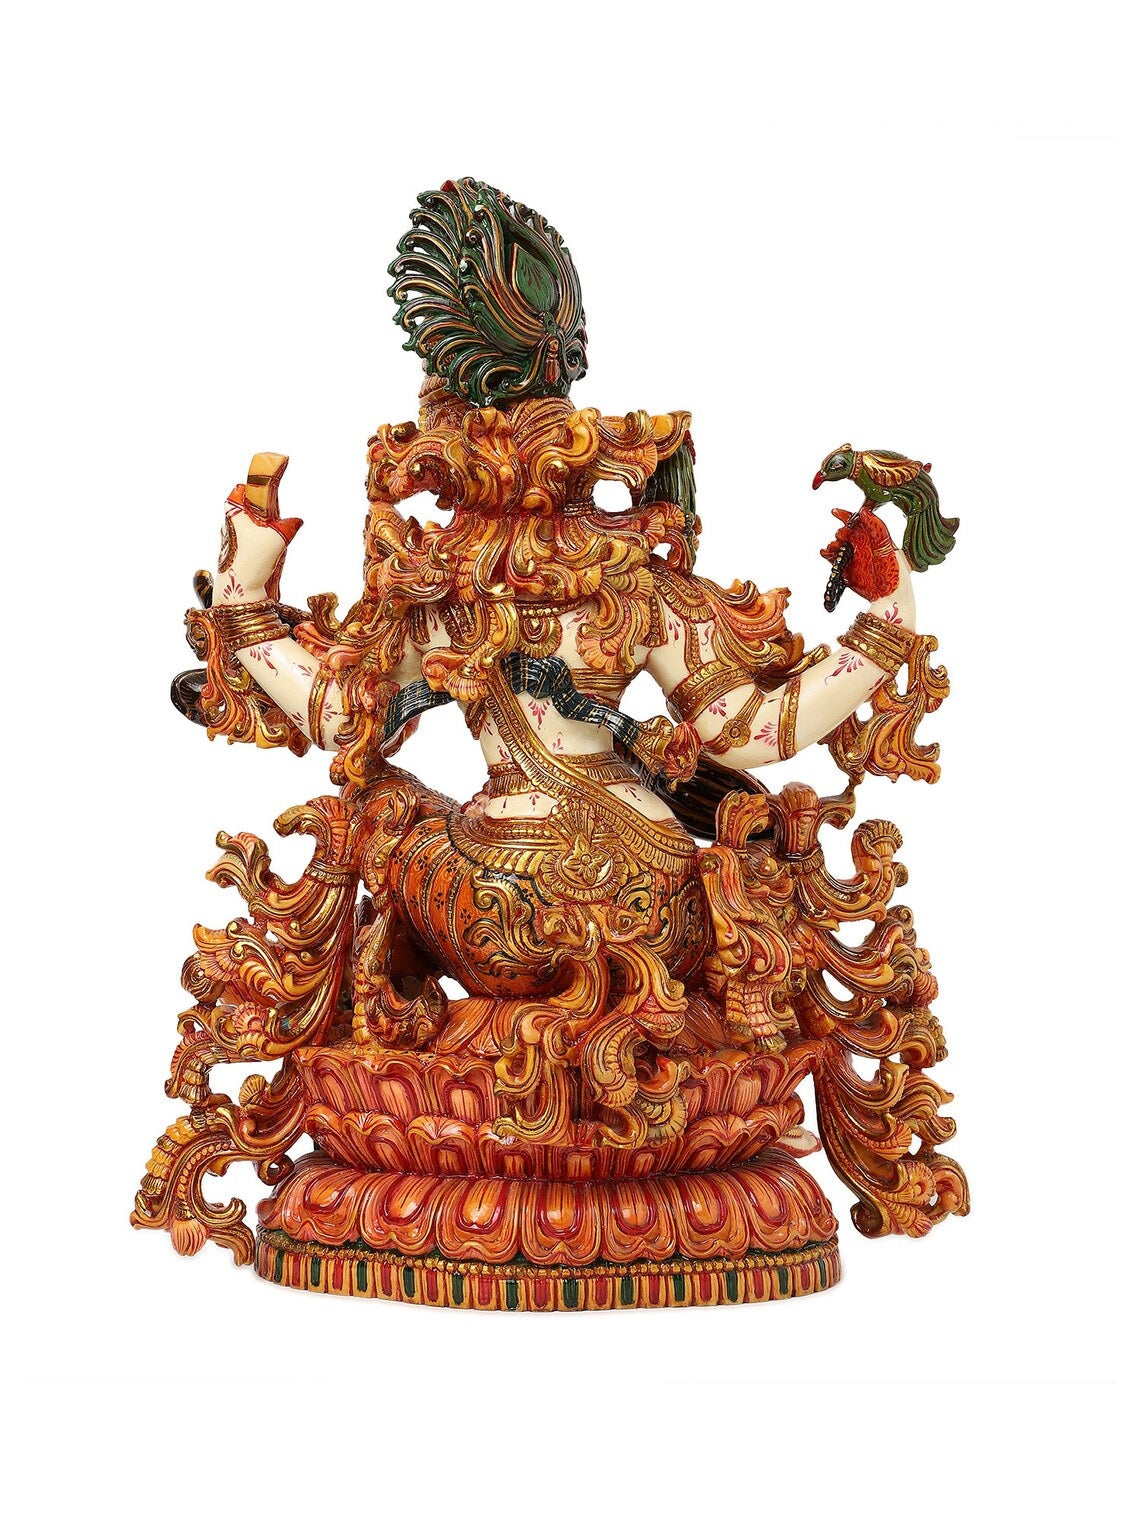 Buy Indian Brass Apsara Sculptures, Statues & Art Online